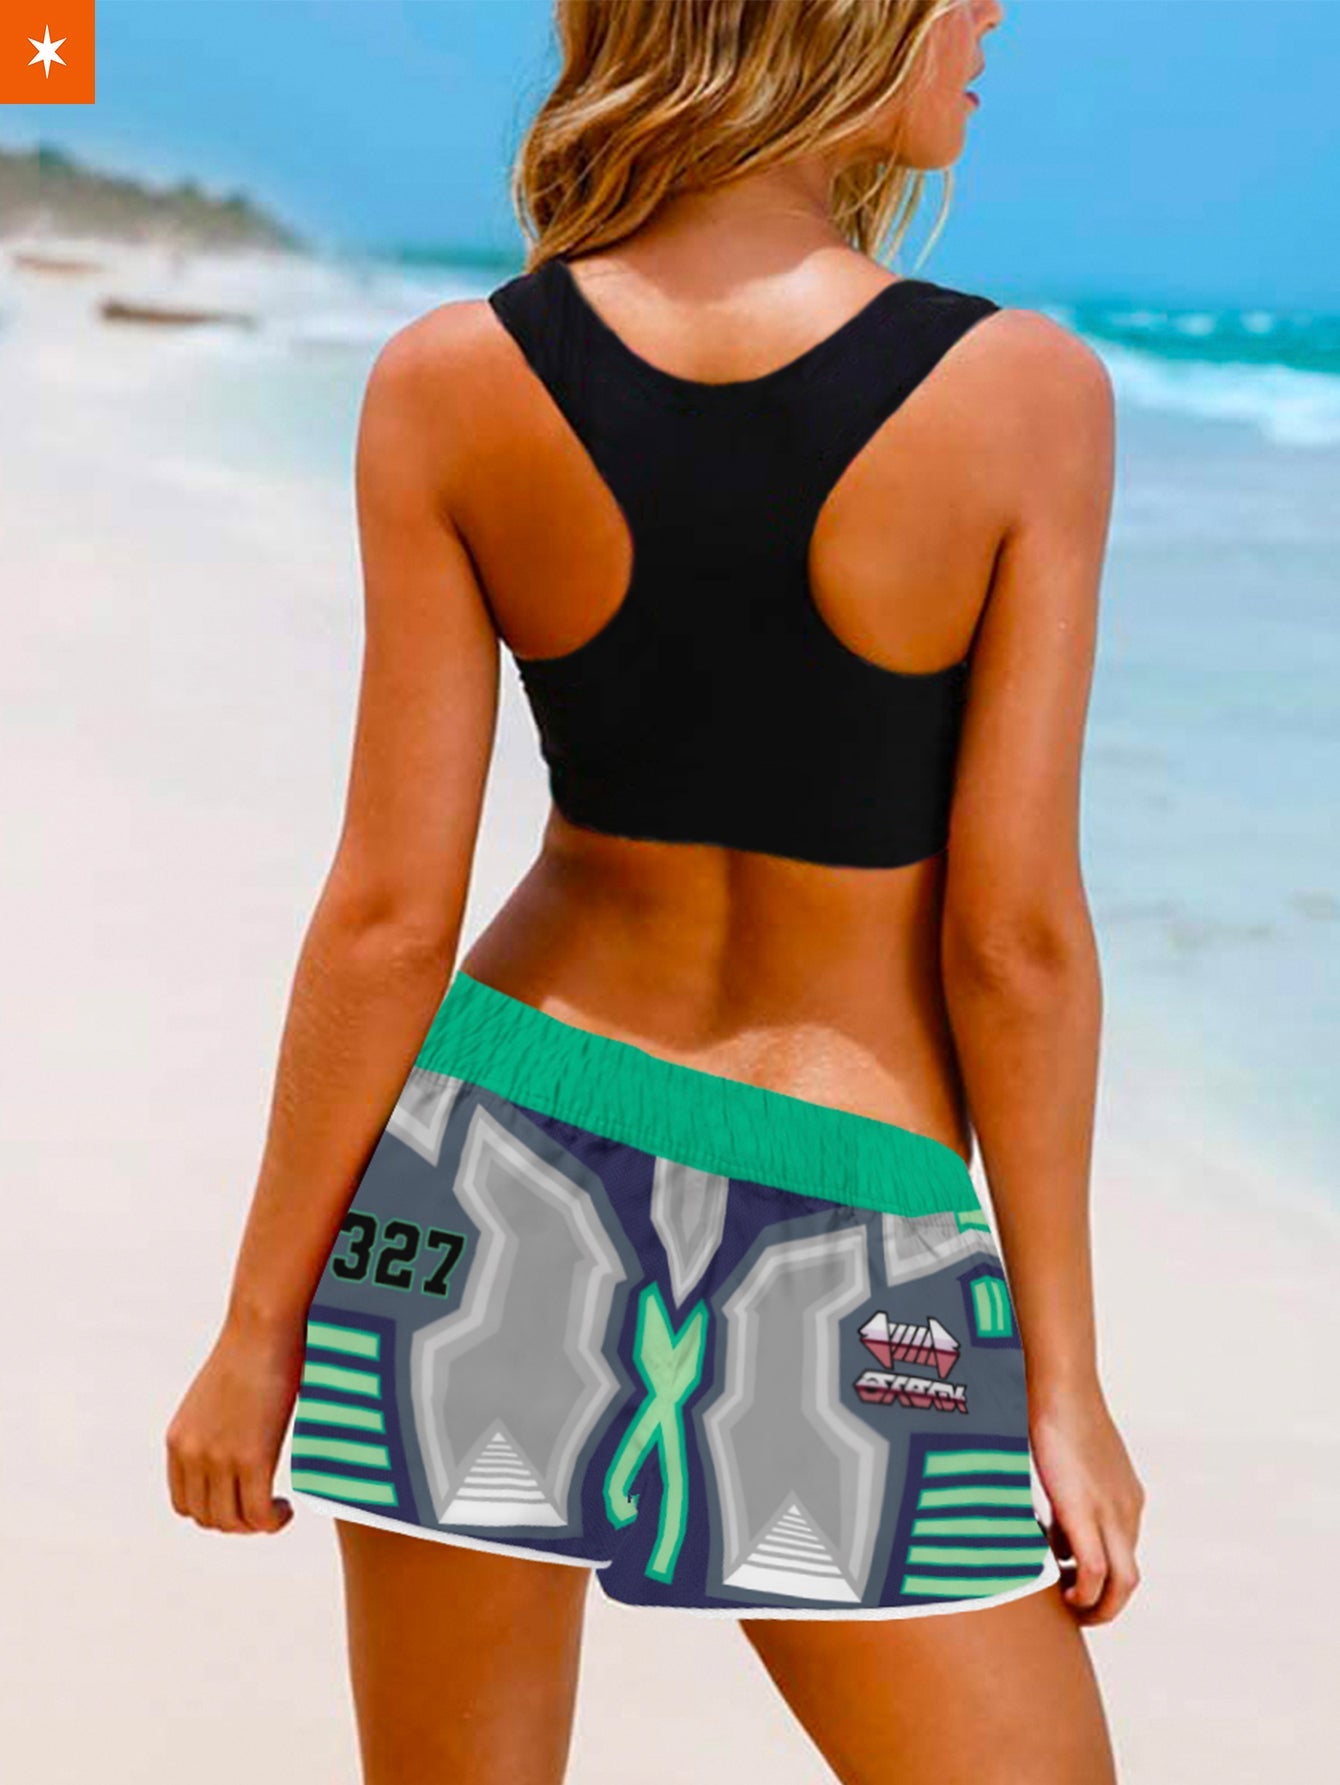 Fandomaniax - [Buy 1 Get 1 SALE] Poke Steel Uniform Women Beach Shorts